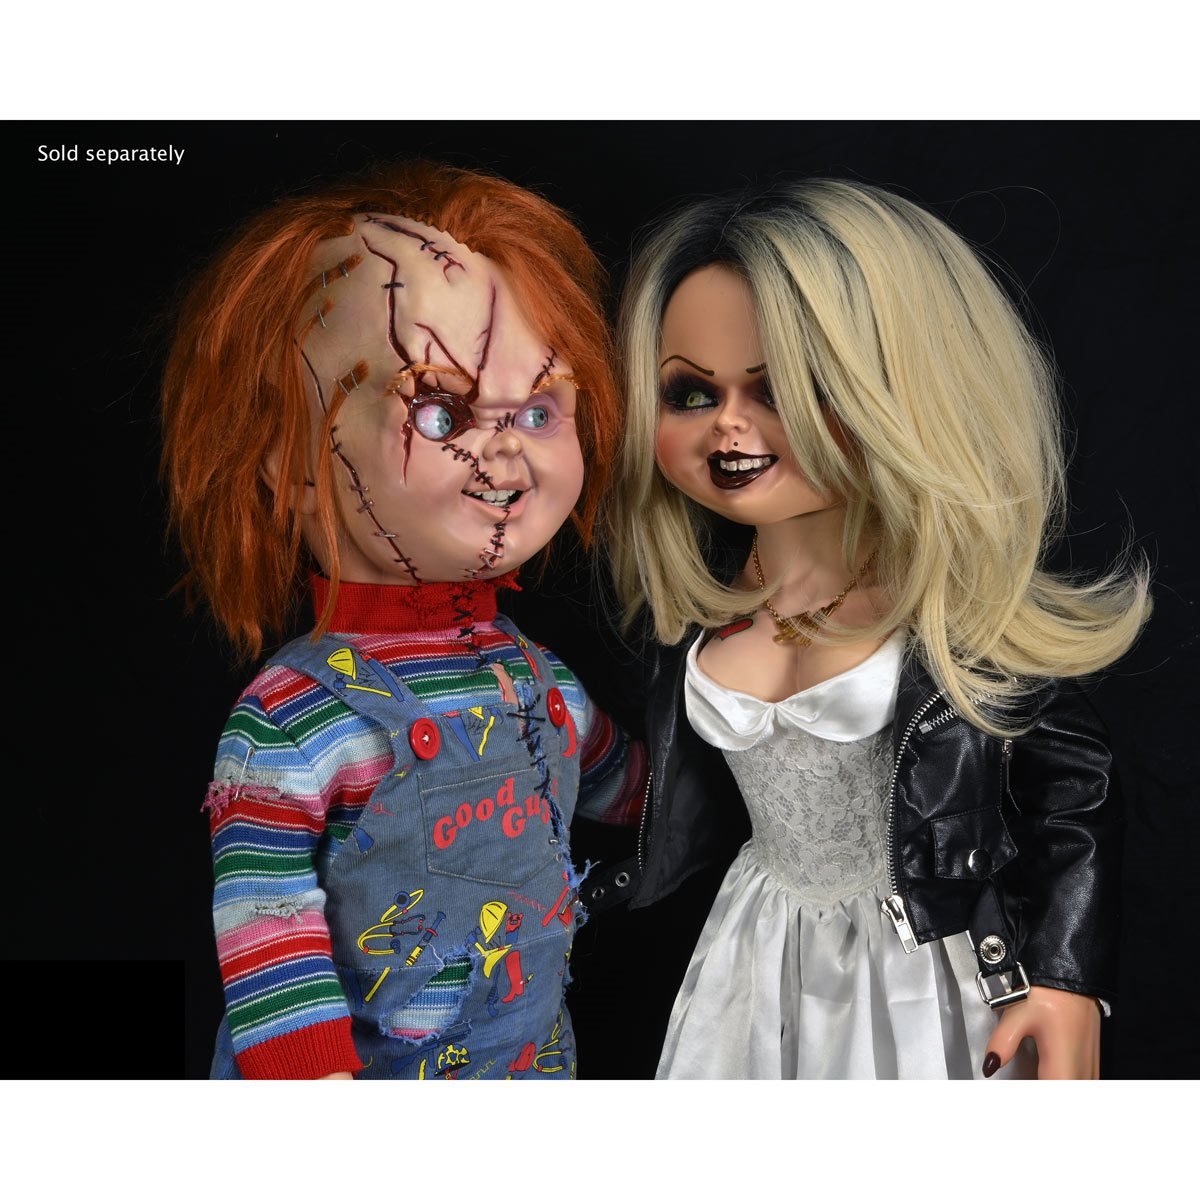 Chucky Cùng Với Vợ Anh Ấy: Hạnh Phúc Không Cần Dấu Hiệu - Abettes ...